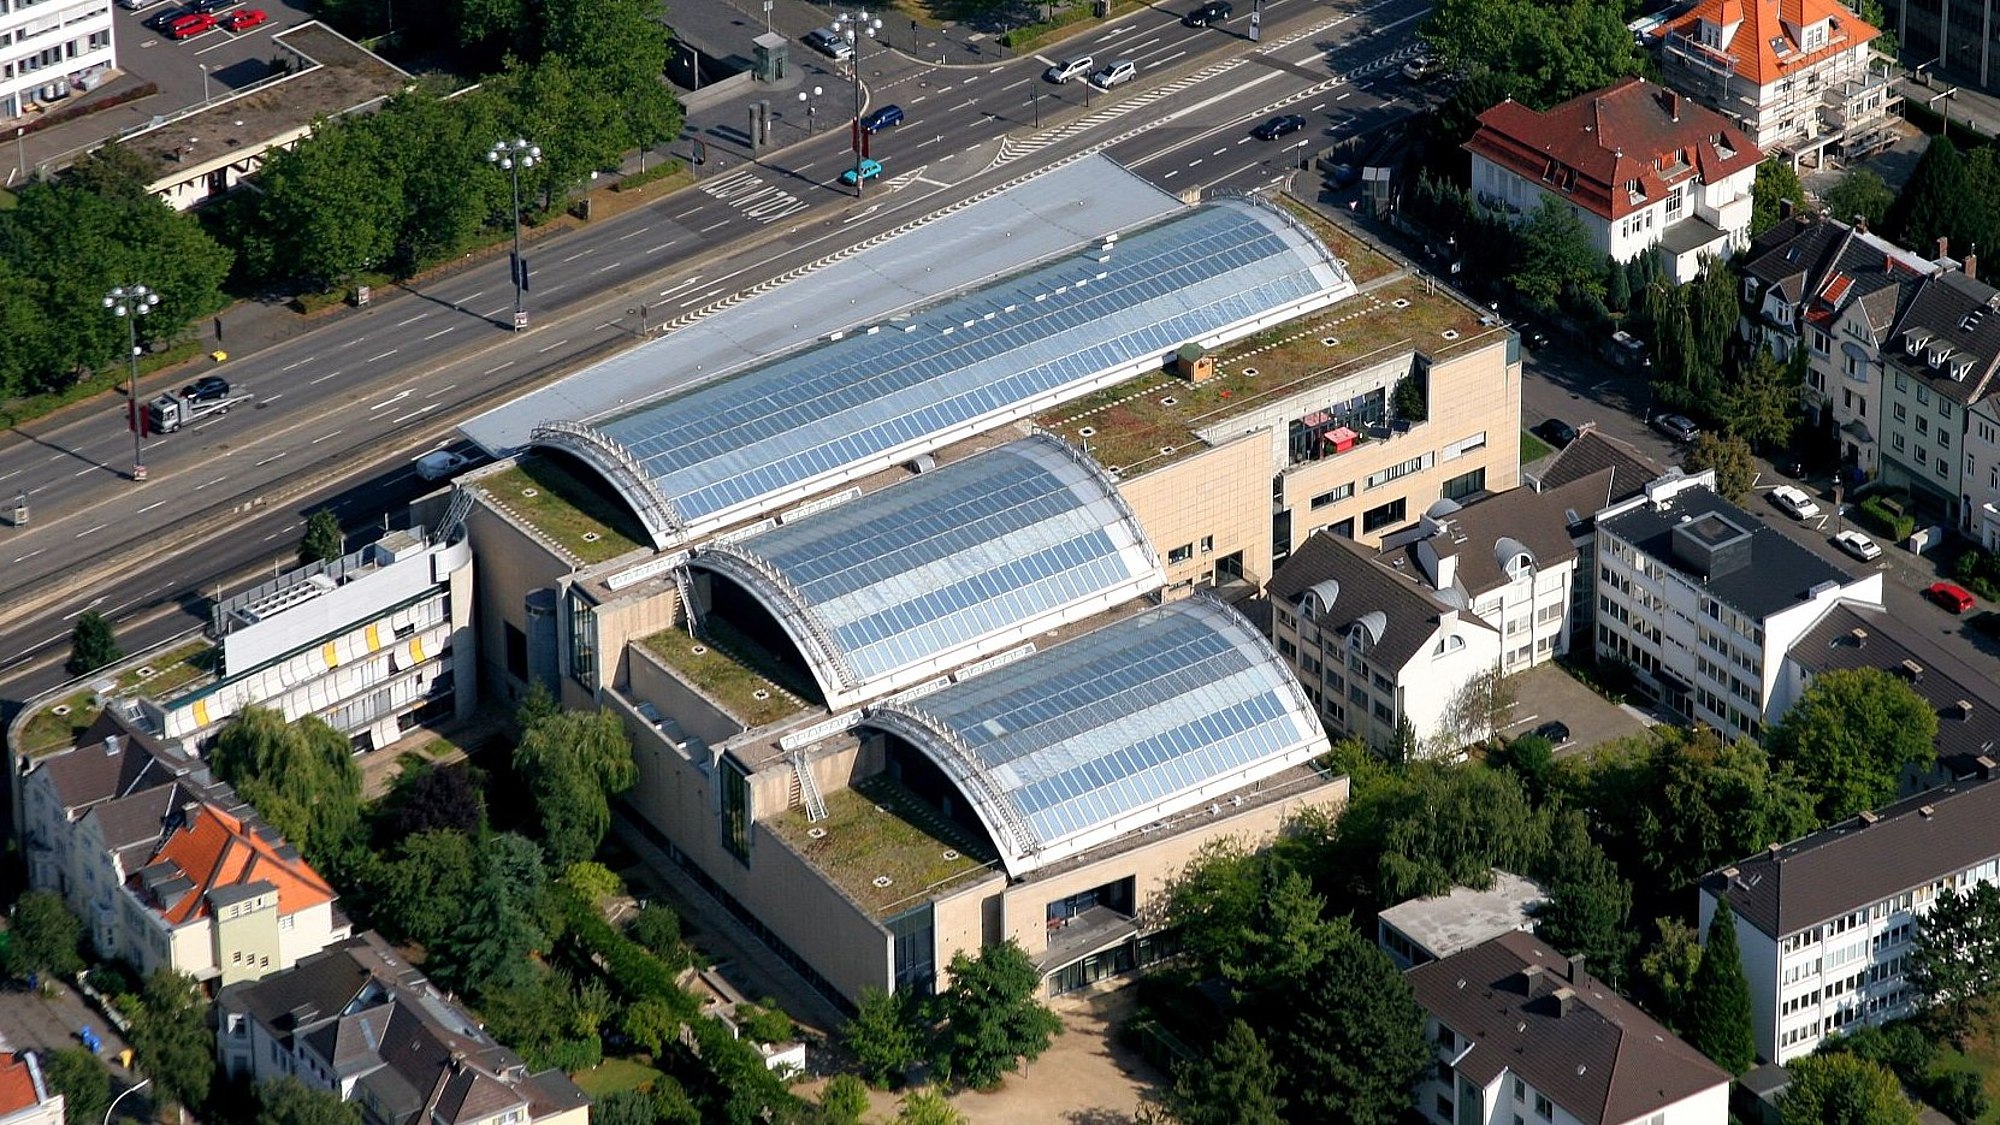 Aerial view of Haus der Geschichte in Bonn